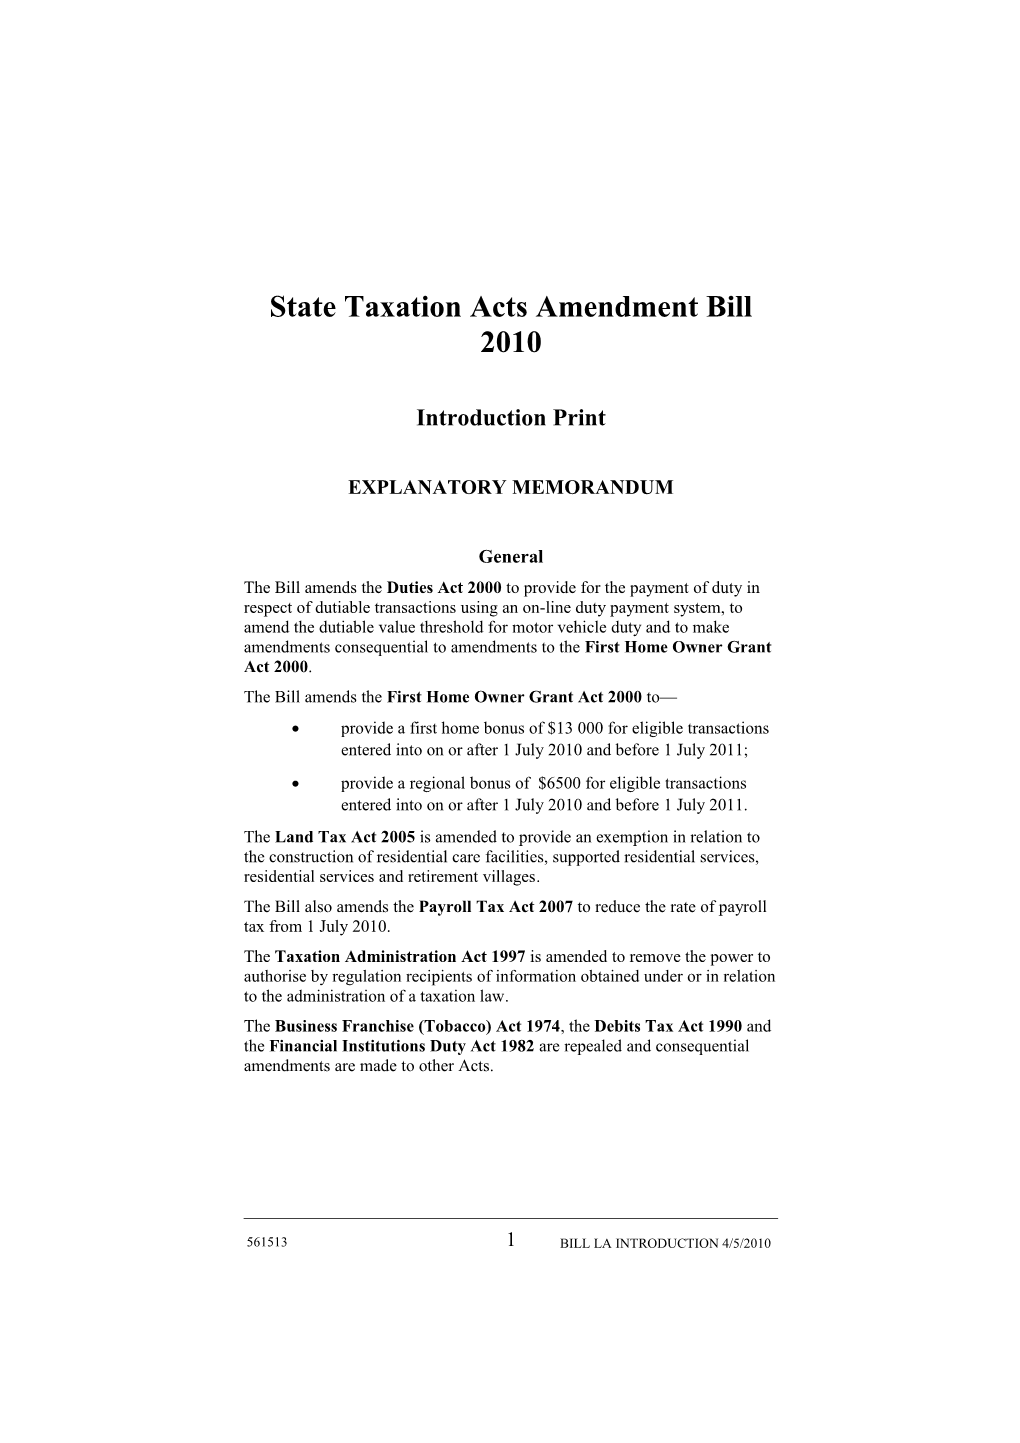 State Taxation Acts Amendment Bill 2010